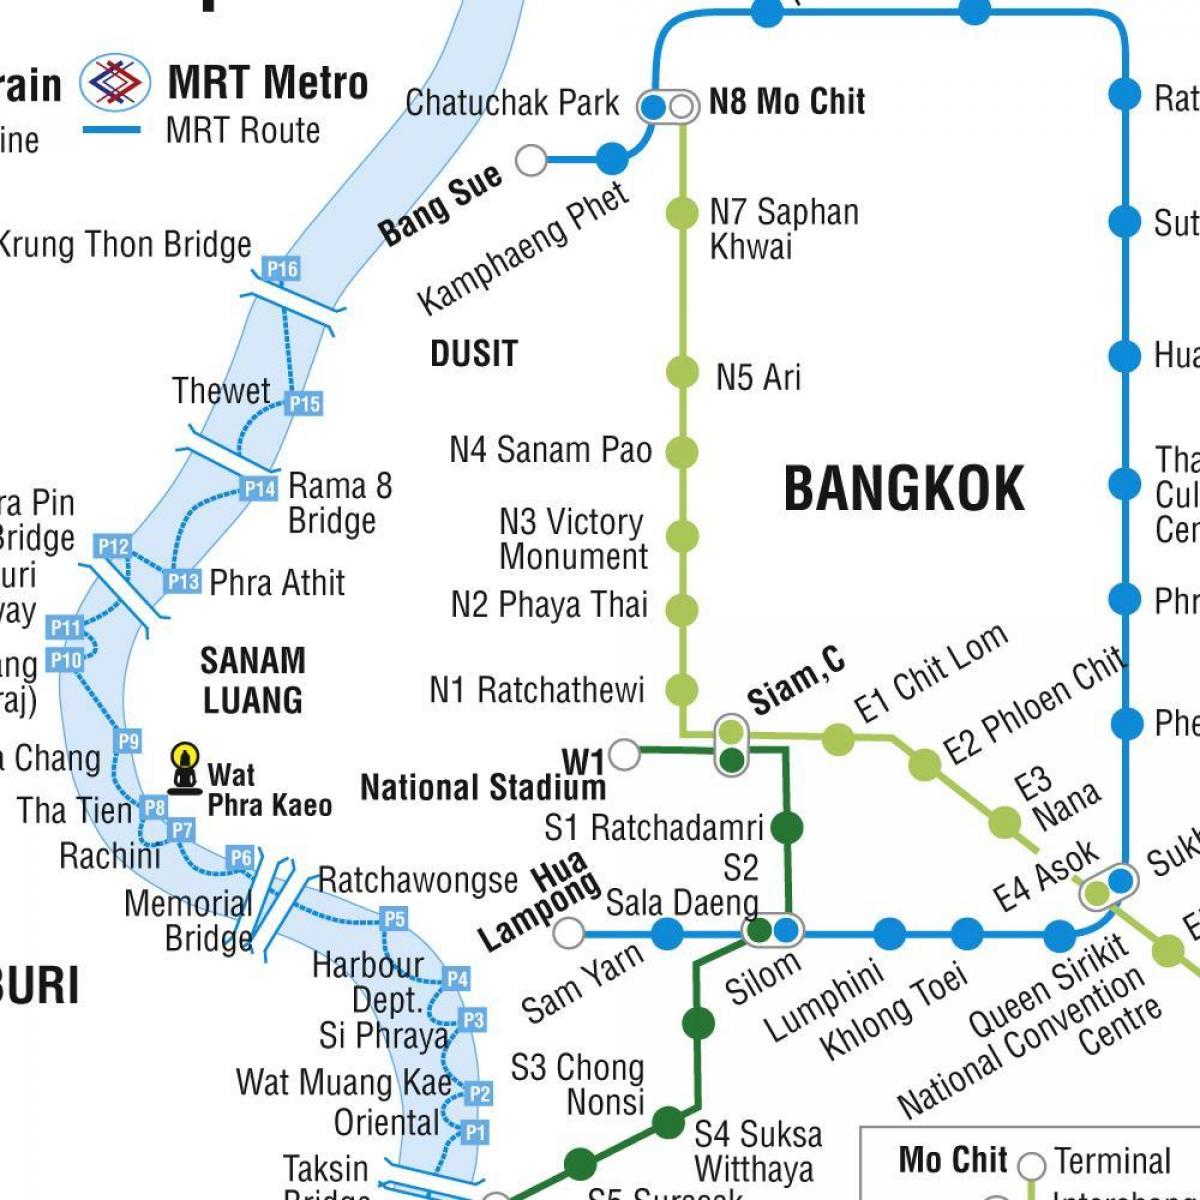 نقشہ بینکاک کے میٹرو اور skytrain کی طرف اشارہ